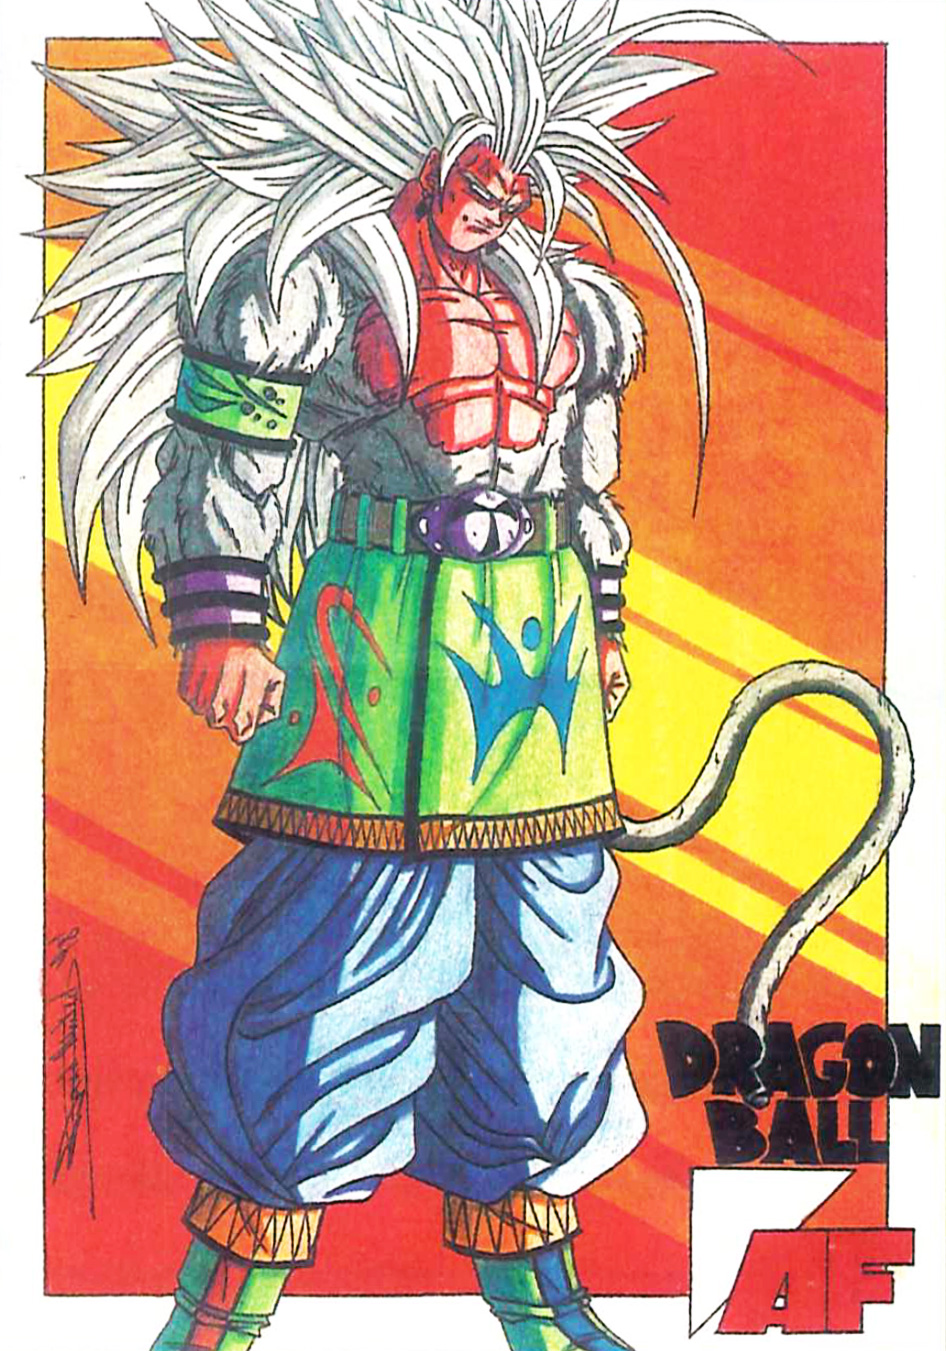 Dragon Ball AF là một chủ đề được yêu thích trong truyện tranh Dragon Ball của tác giả Akira Toriyama. Cùng đến tìm hiểu thêm về các nhân vật trong series nổi tiếng này và khám phá thế giới của Dragon Ball AF thông qua tài liệu và hình ảnh cập nhật tại Dragon Ball Wiki.